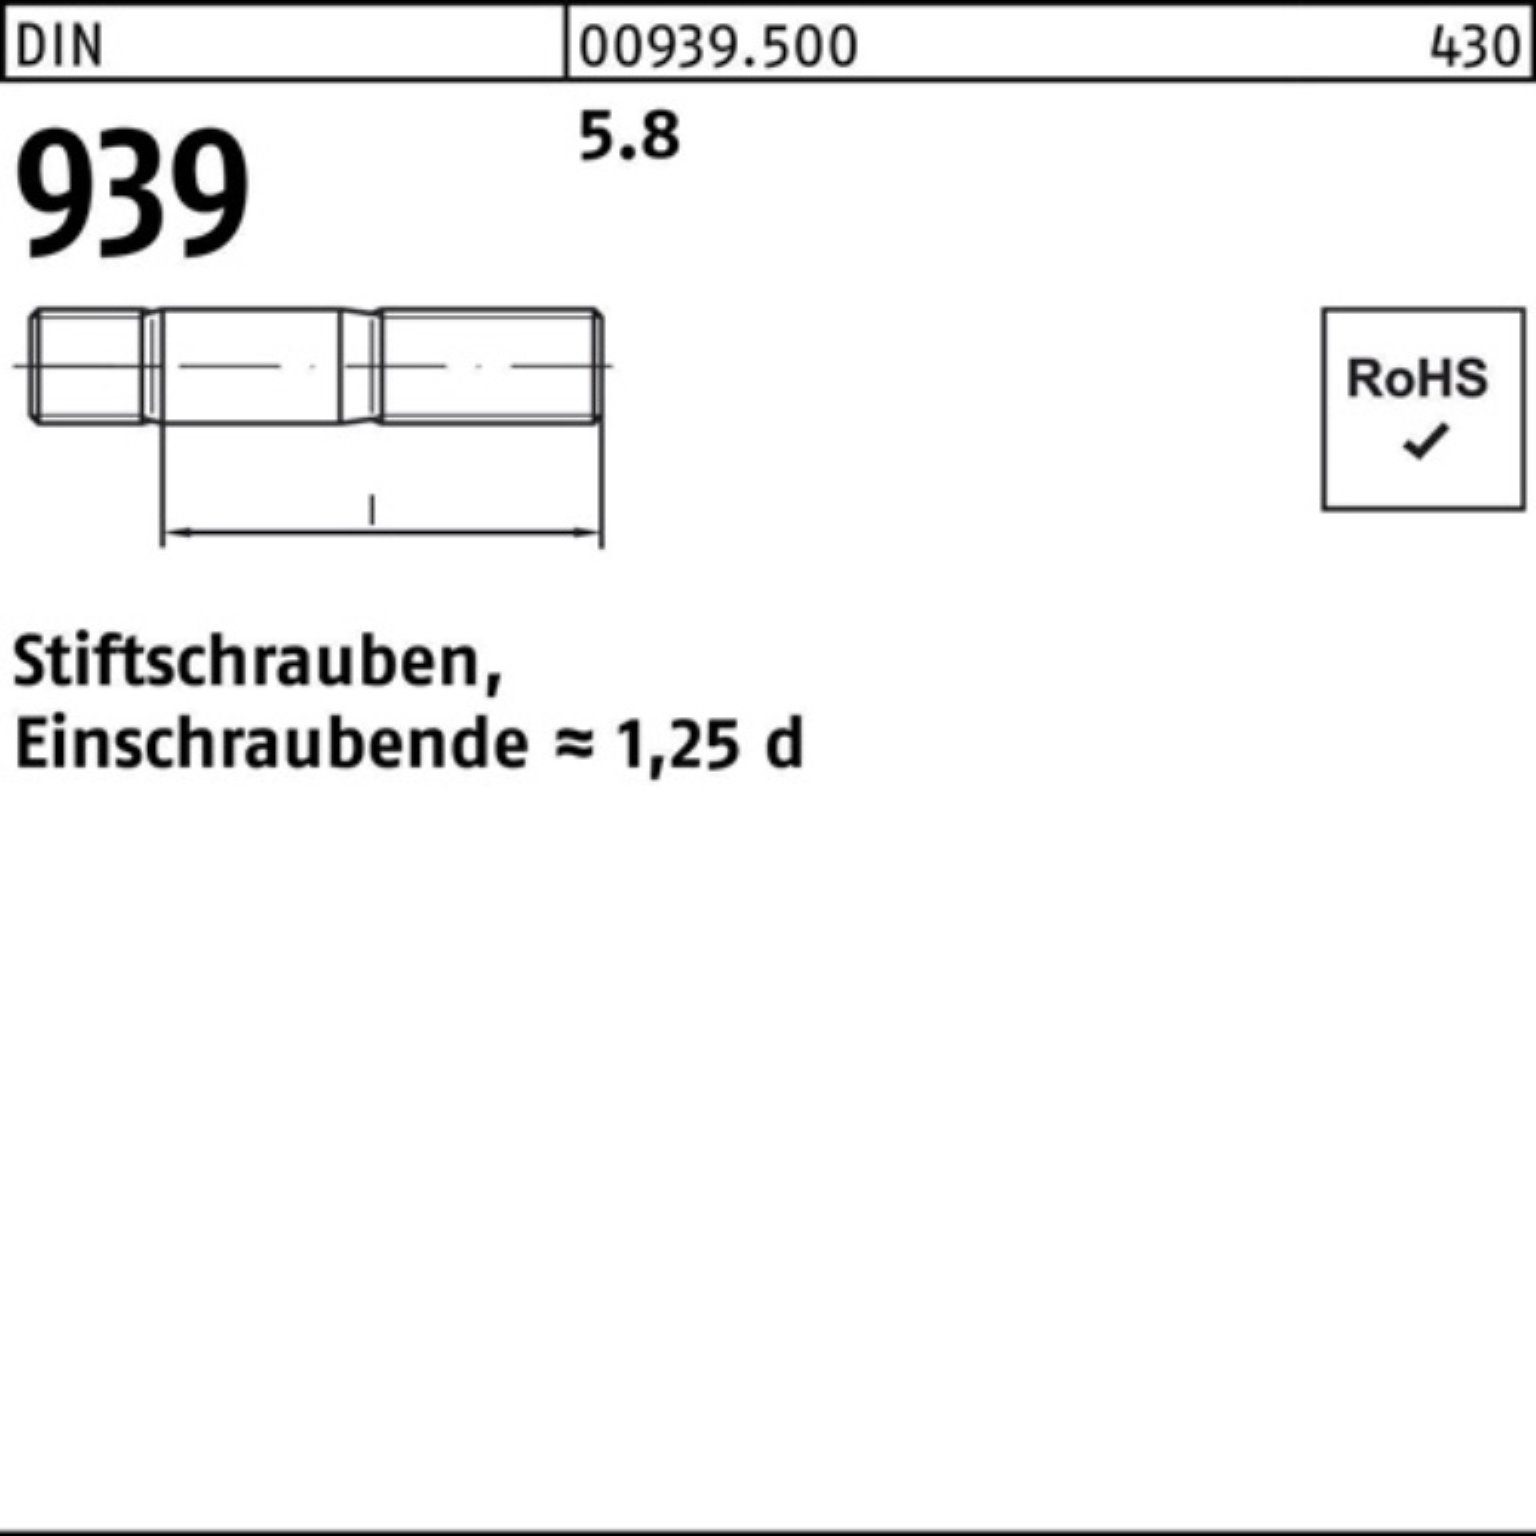 Stiftschraube M6x Pack 50 Einschraubende=1,25d 939 100 DIN S 100er Stiftschraube 5.8 Reyher